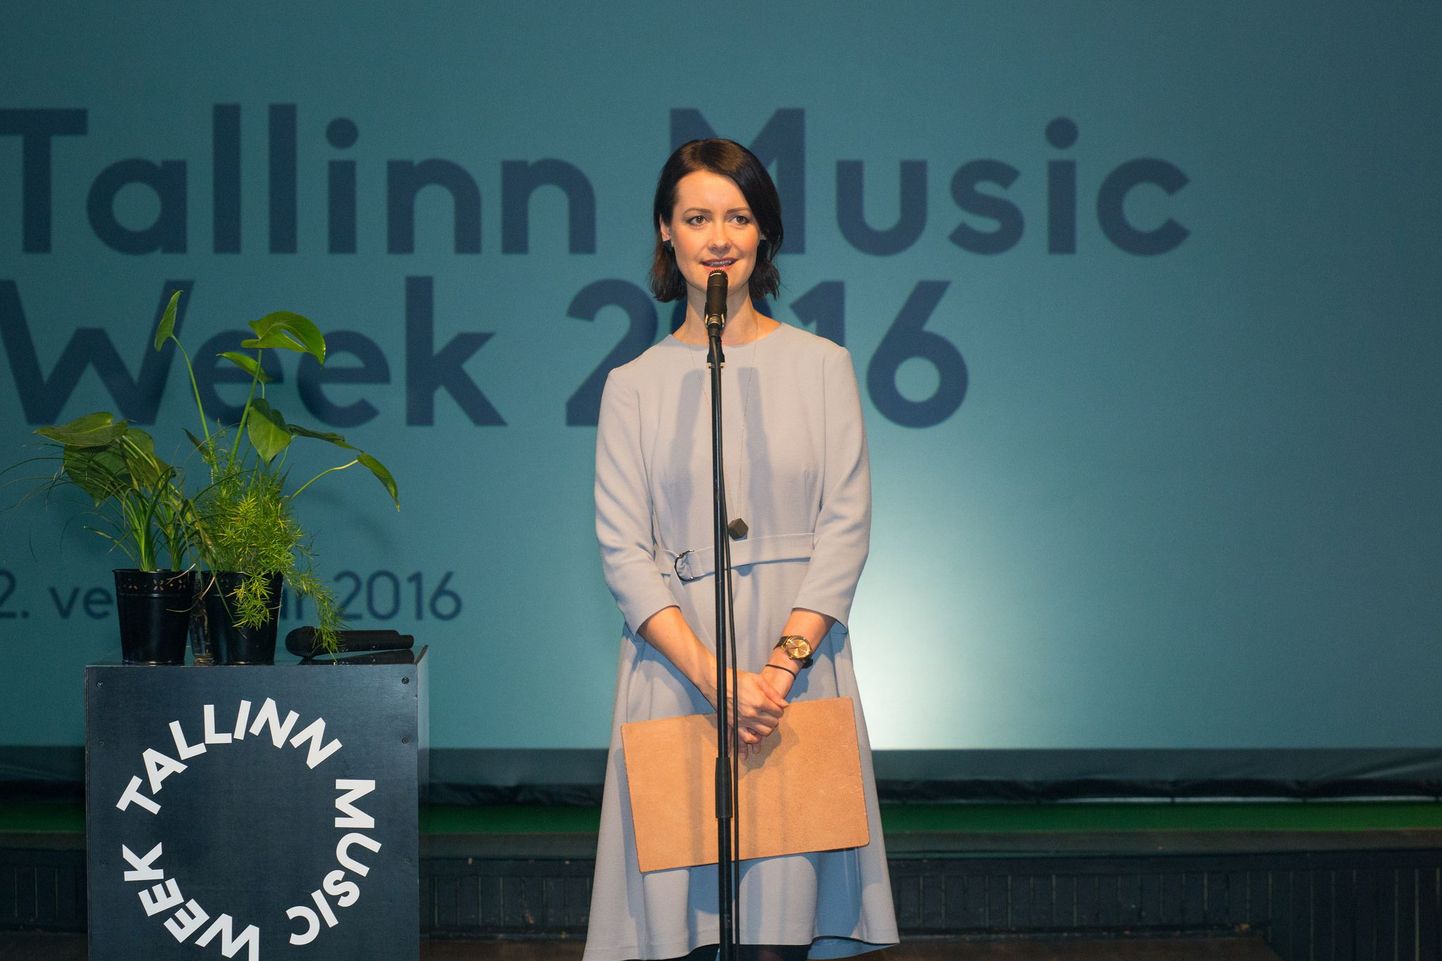 Helen Sildna kuulutab Erinevate Tubade Klubis välja tänavuse Tallinn Music Weeki.